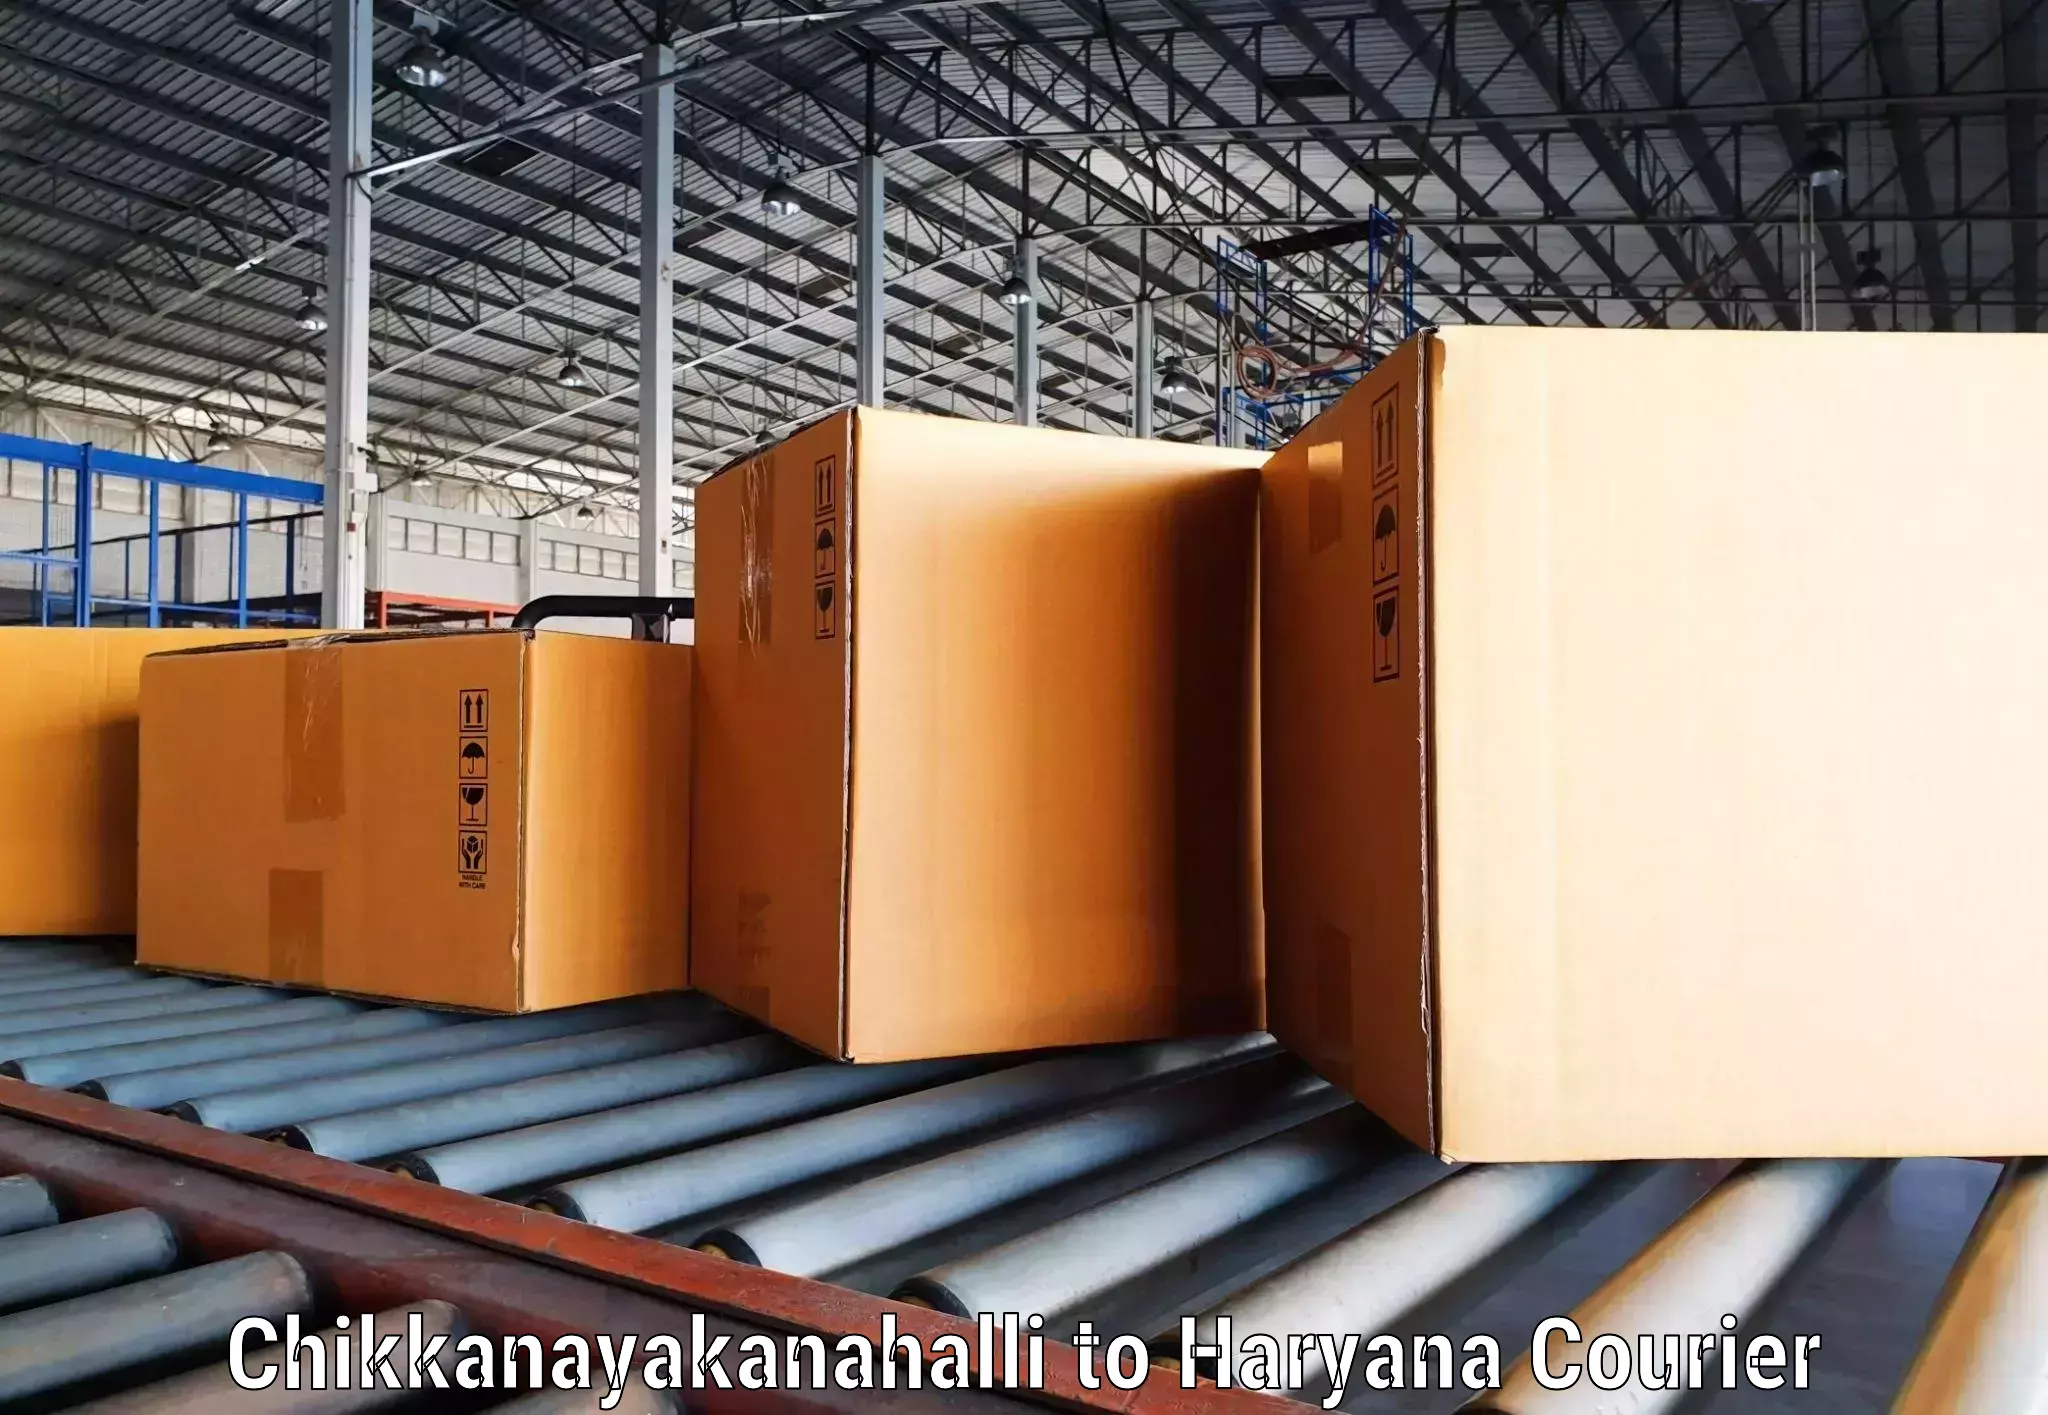 Nationwide shipping capabilities Chikkanayakanahalli to Ambala